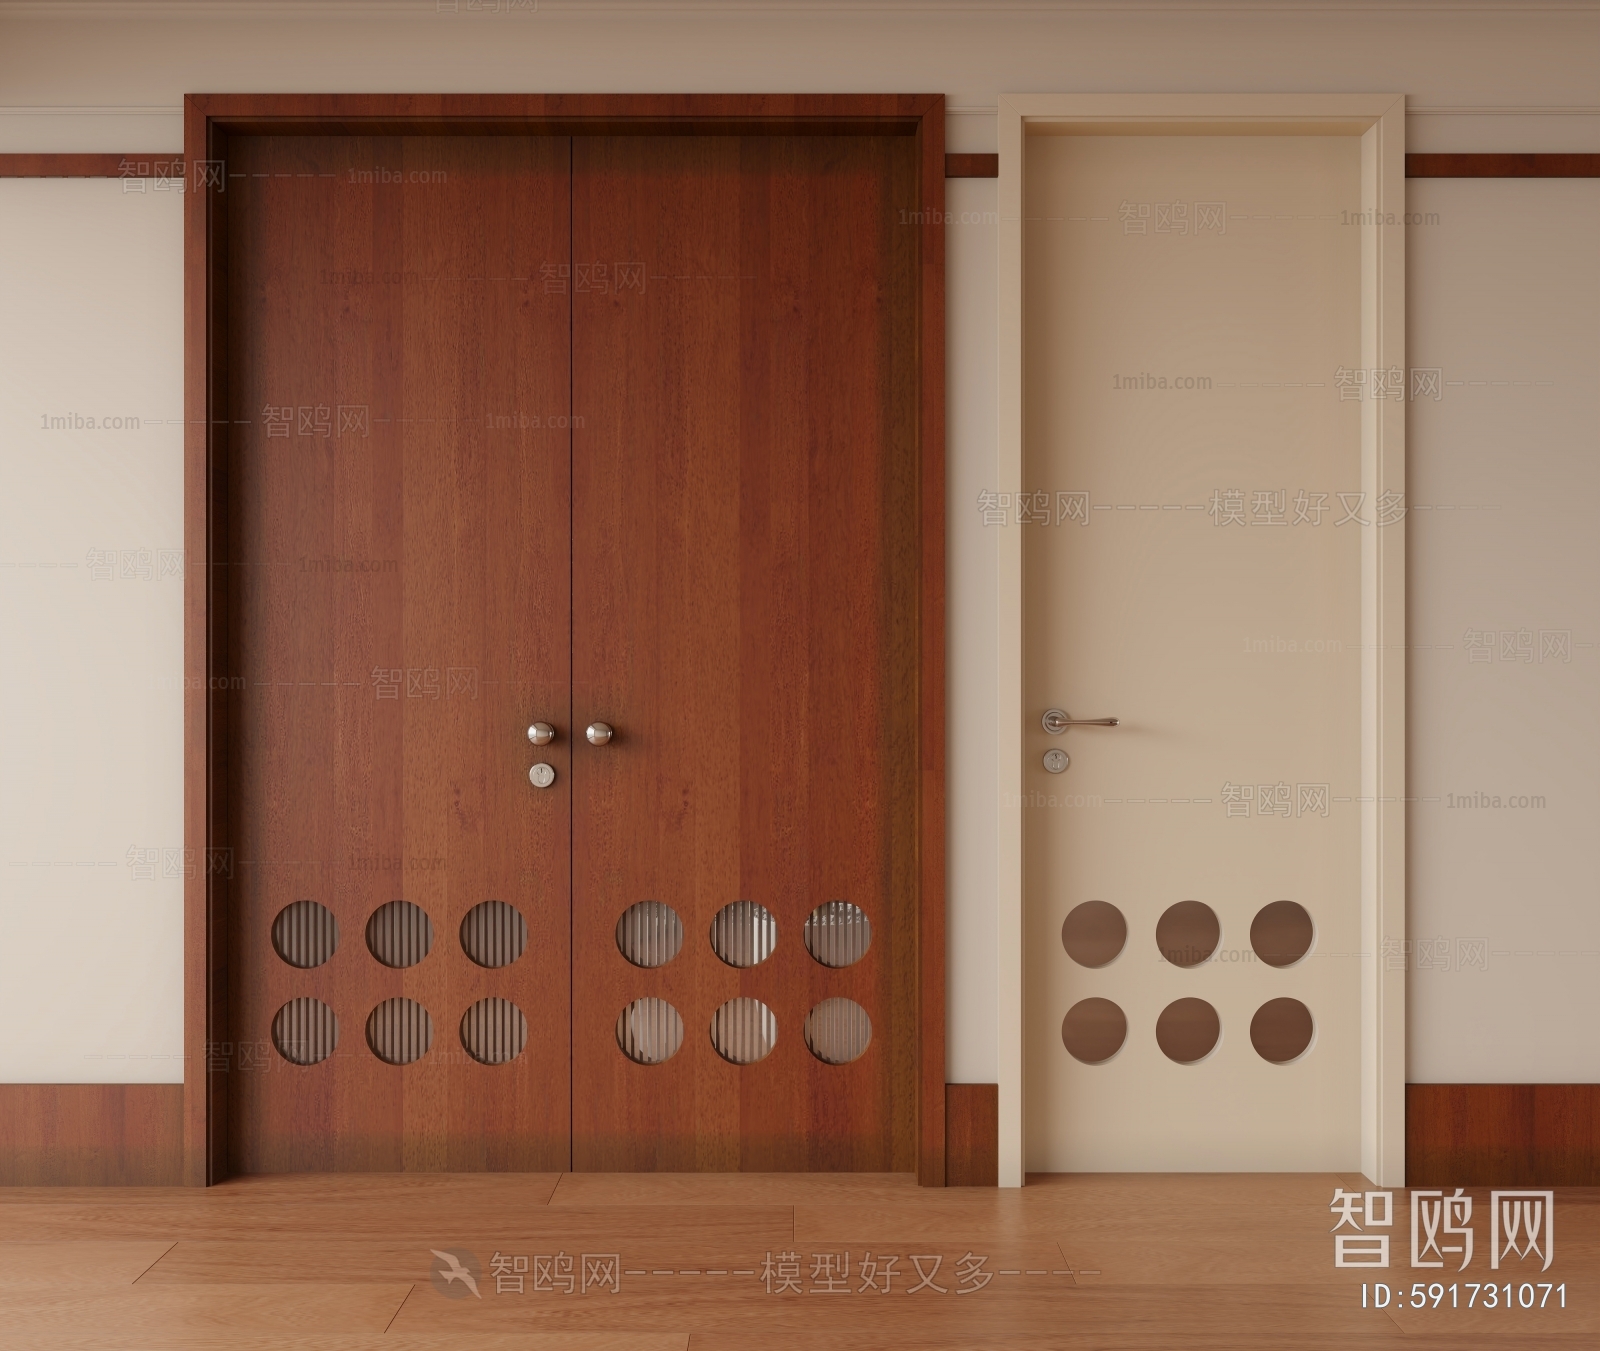 Wabi-sabi Style Double Door